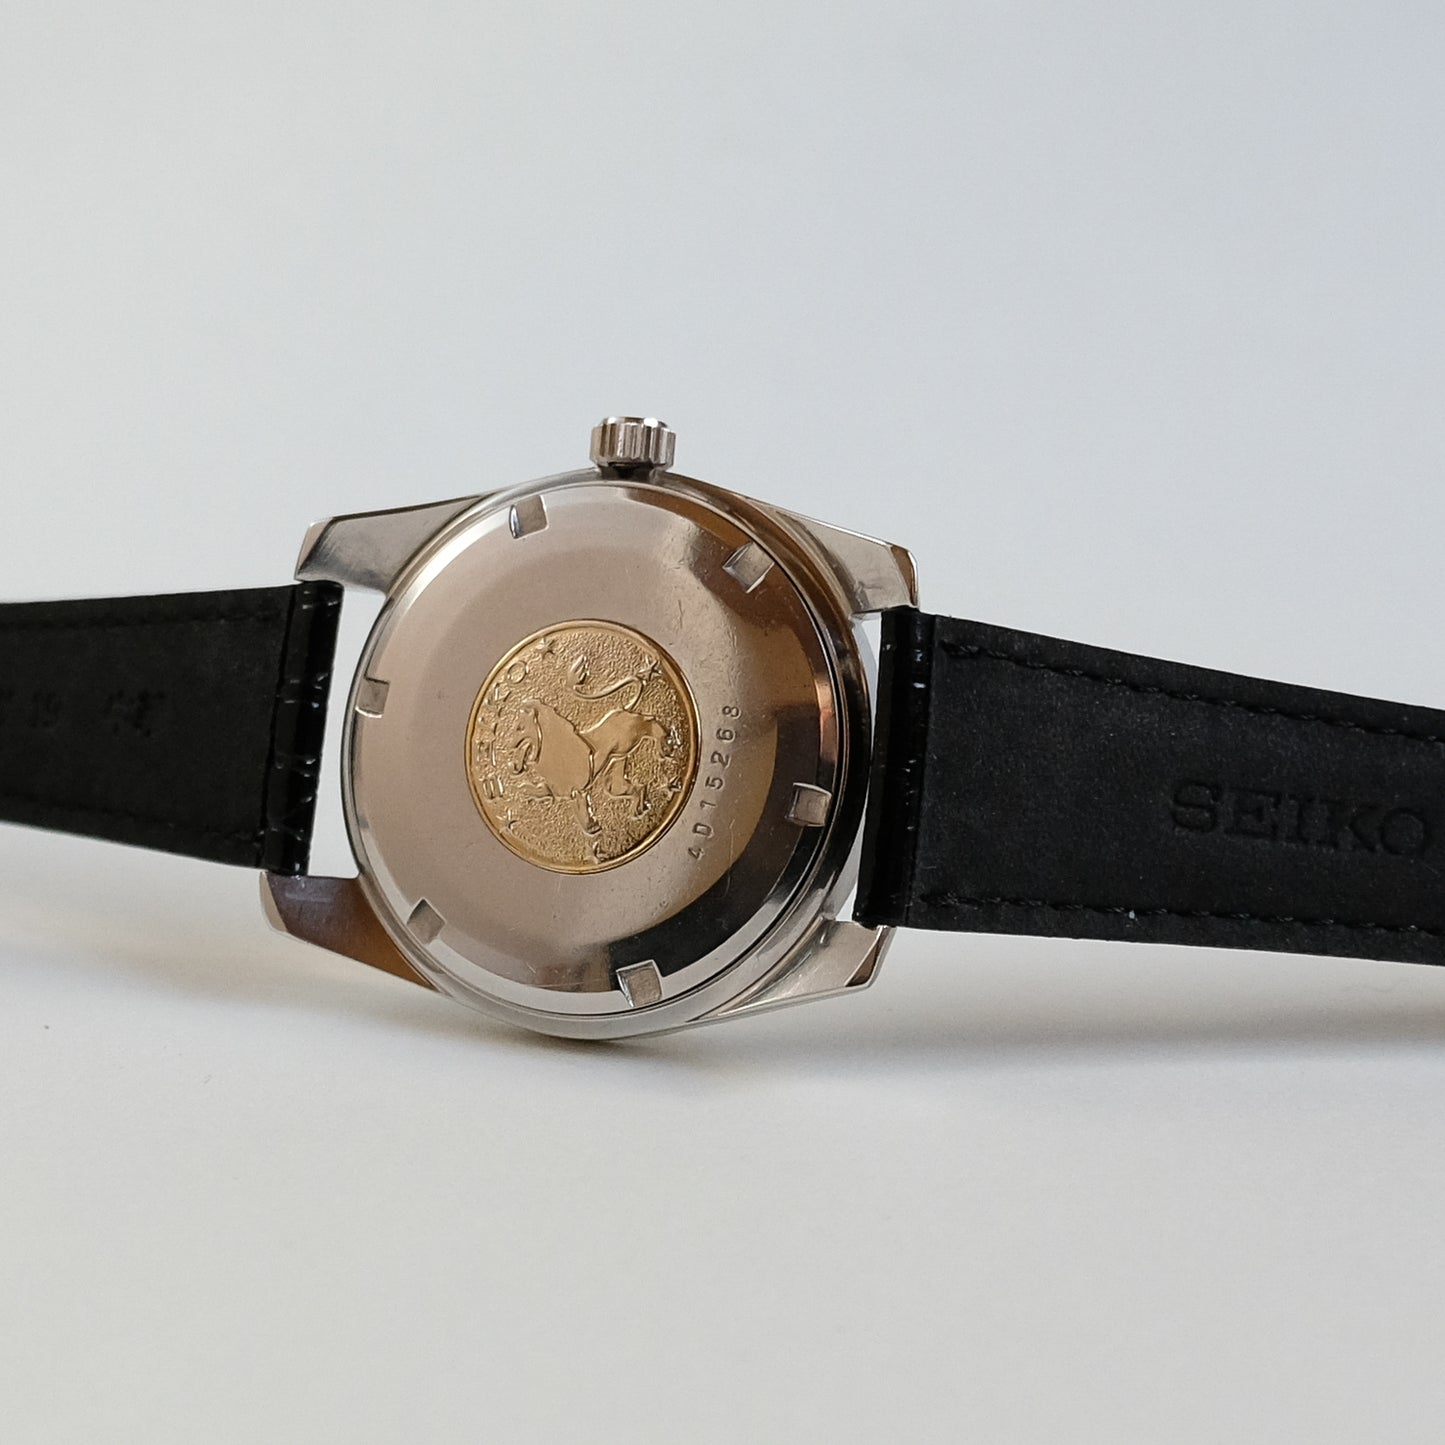 1964 Grand Seiko  Chronometer 43999